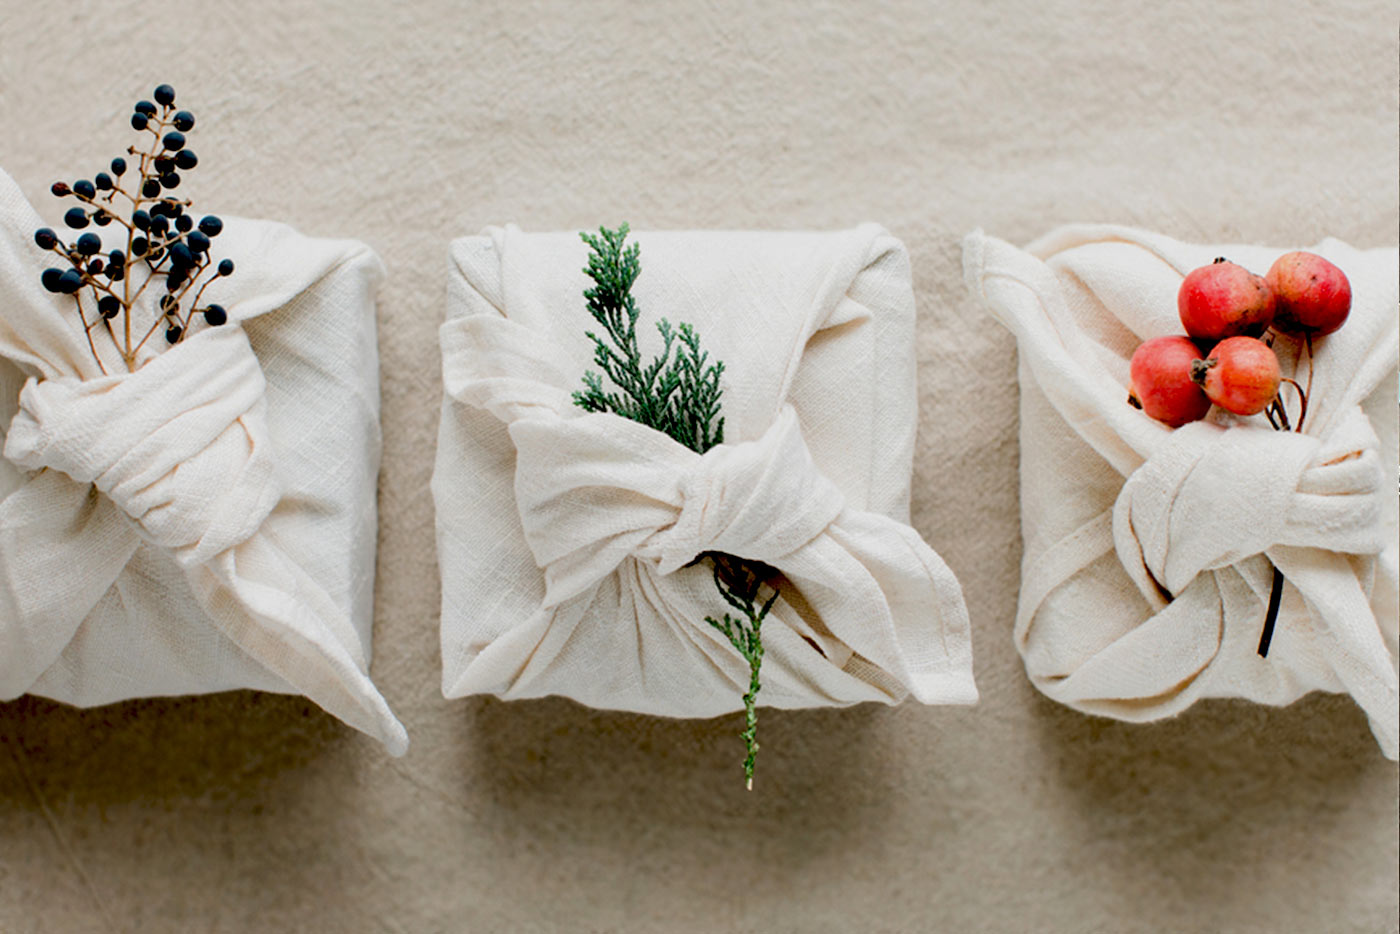 Japanese furoshiki gift wrapping